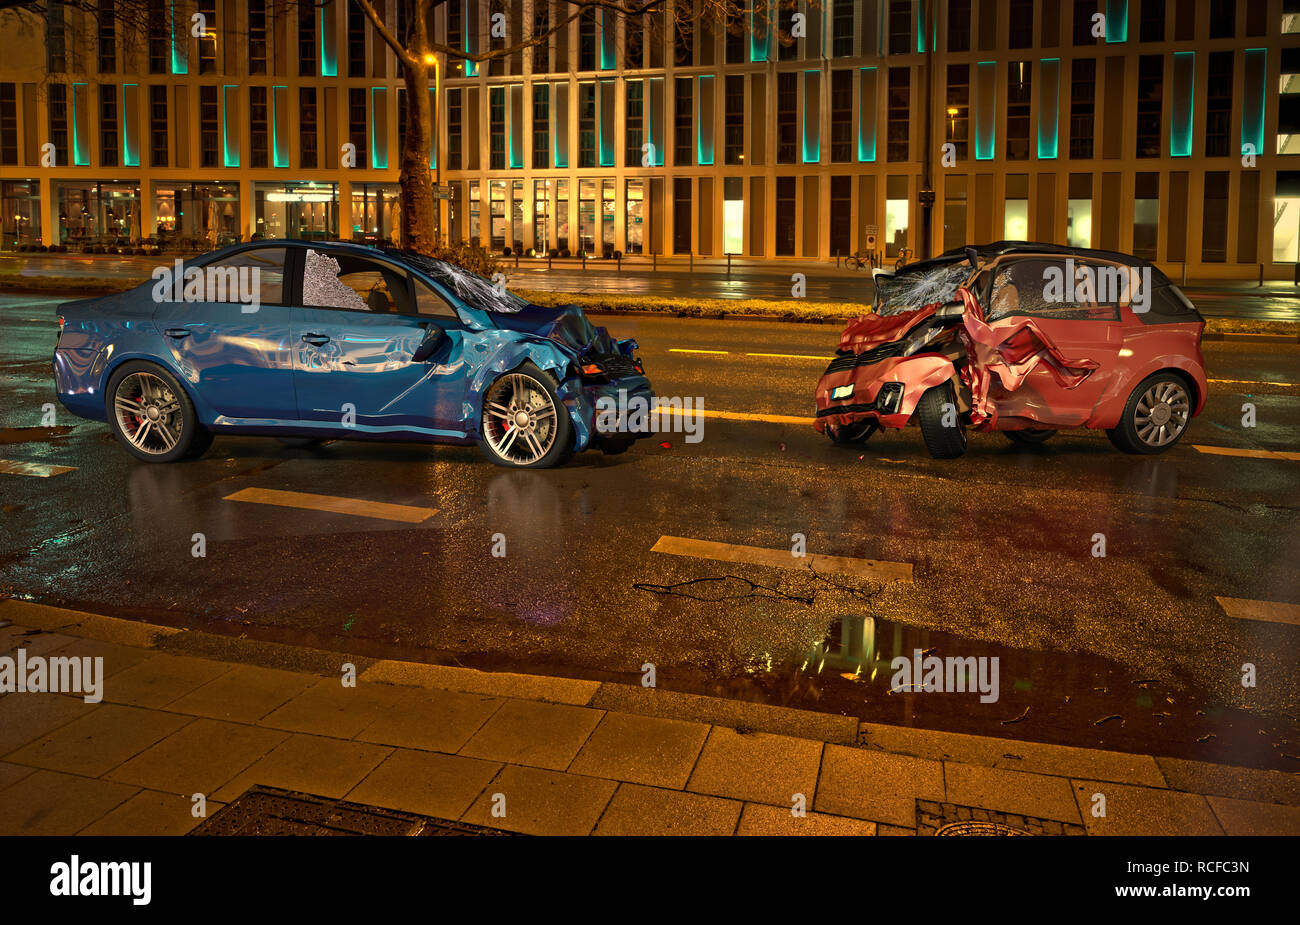 Deux voitures accident. Les voitures s'est écrasé sur la route sur la ville de nuit. Une berline bleue contre une voiture de ville rouge. Collision frontale avec de grands dommages. Banque D'Images